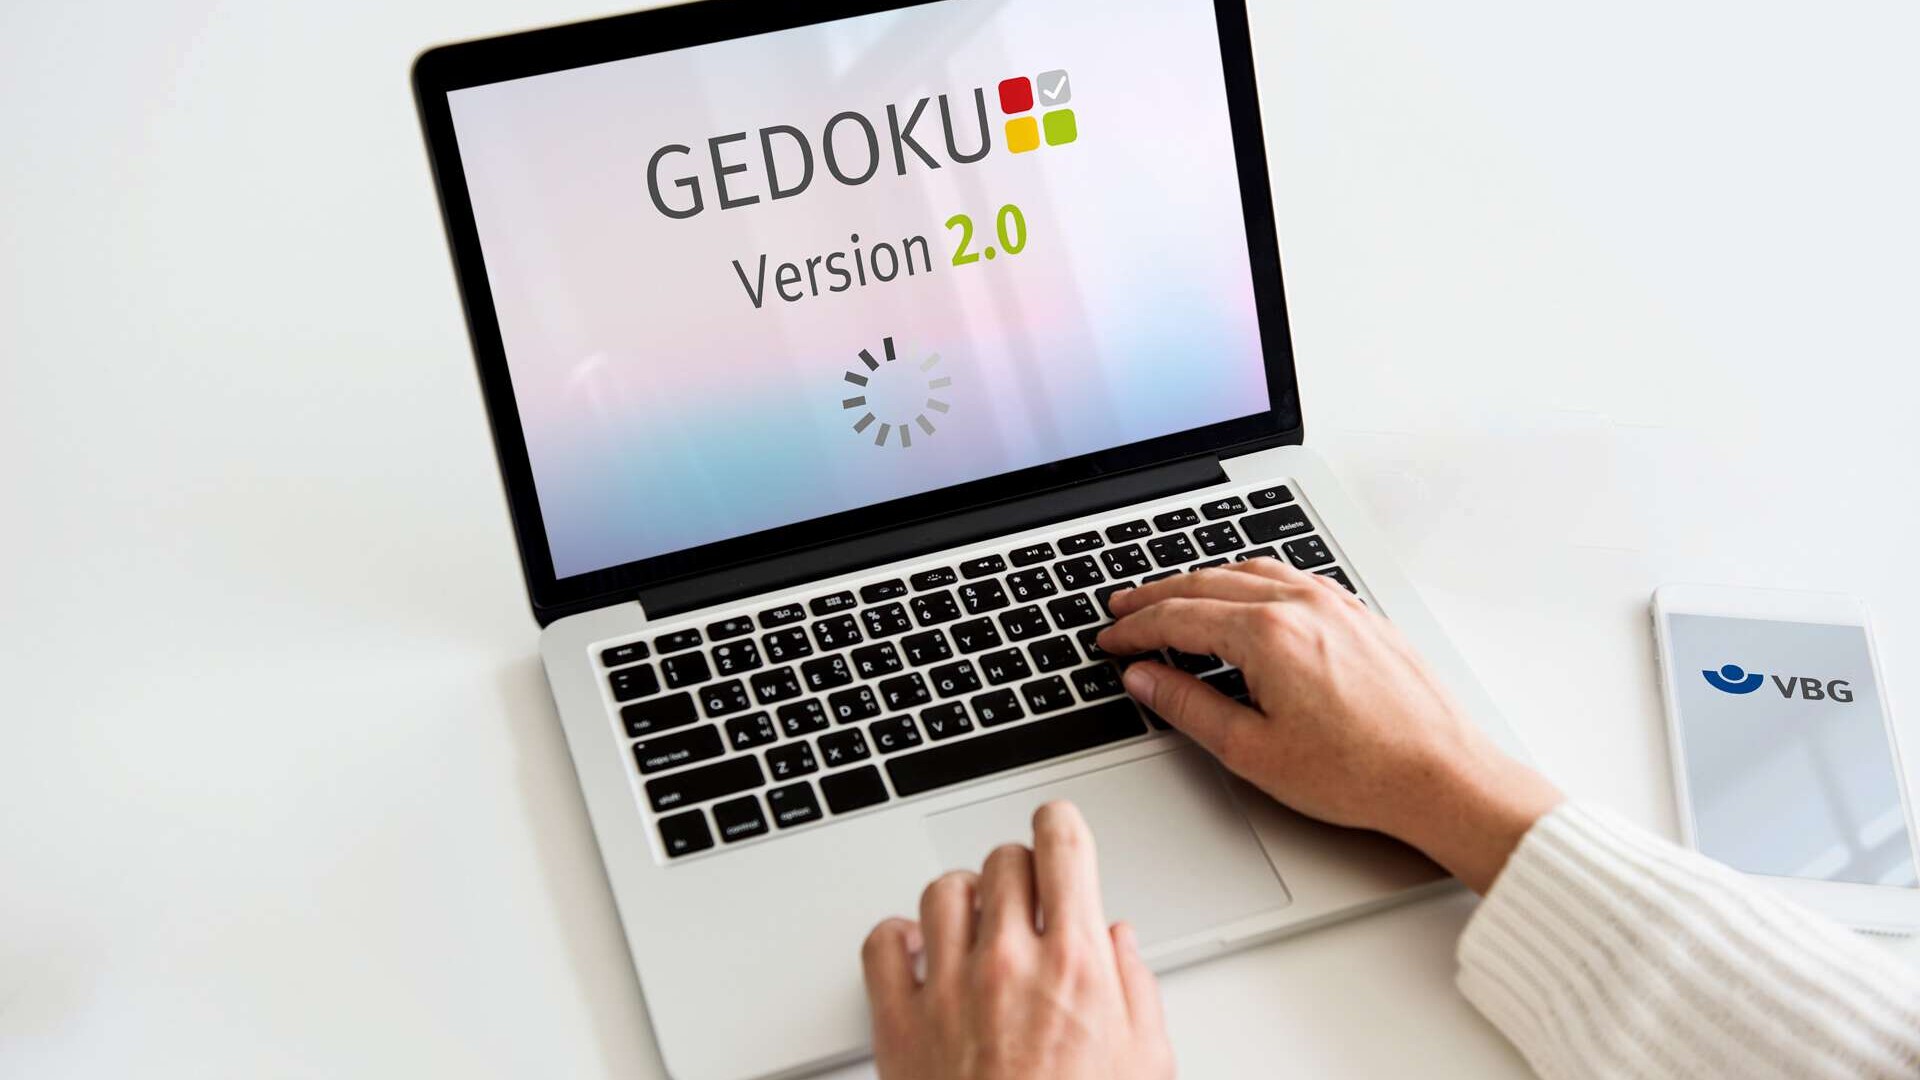 GEDOKU - Mockup: Symbolisch dargestelltes Logo der Anwendung auf dem Bildschirm eines Laptops. #filzer